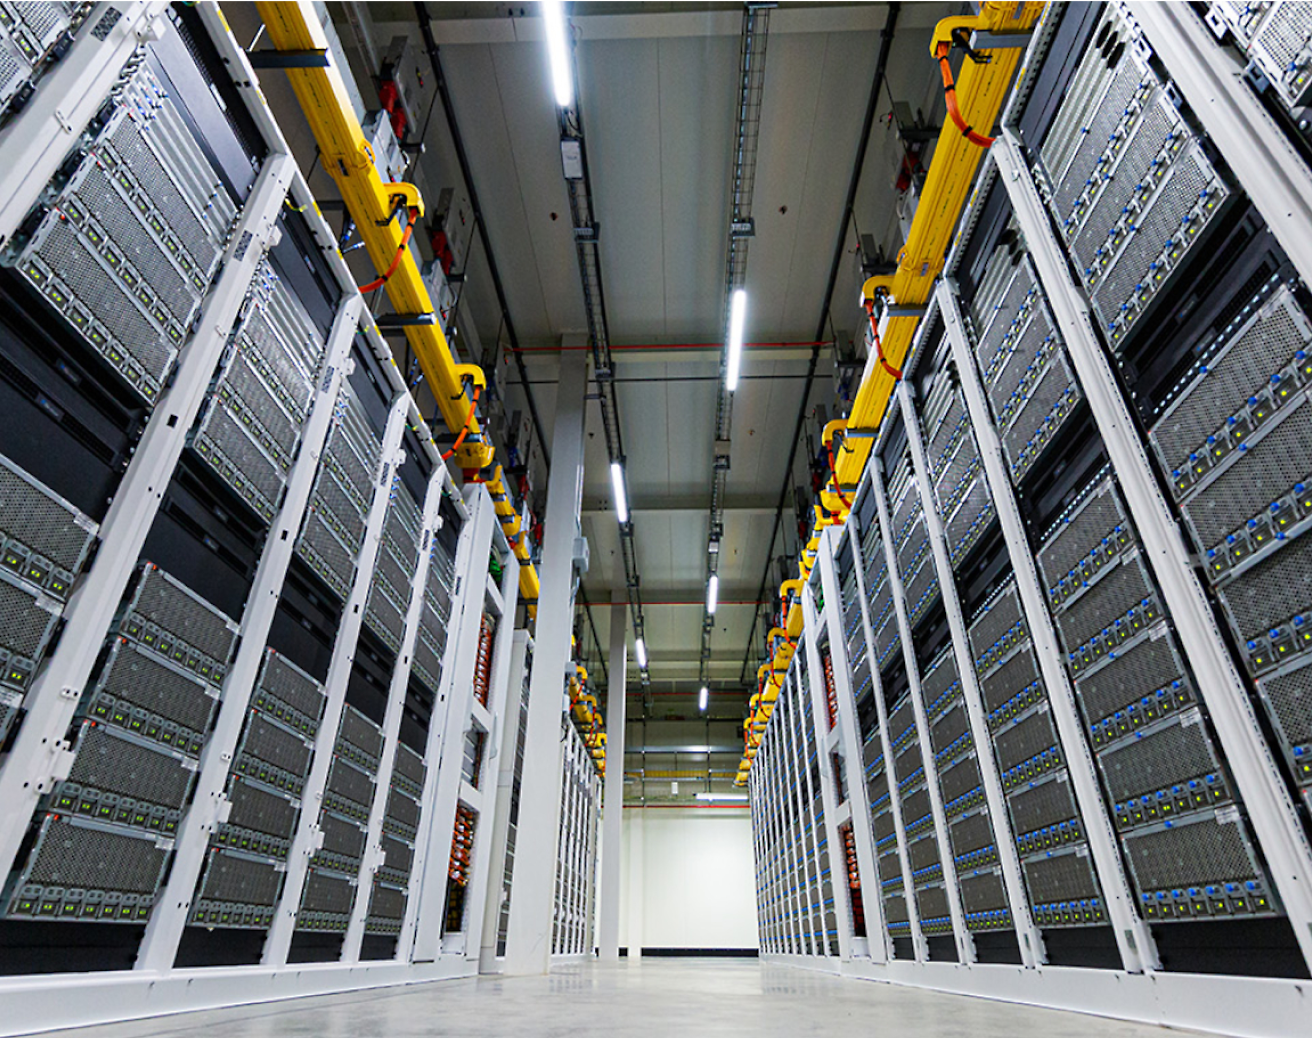 Corredor entre fileiras de racks de servidores altos e modernos em um data center, com bandejas de cabos suspensas.